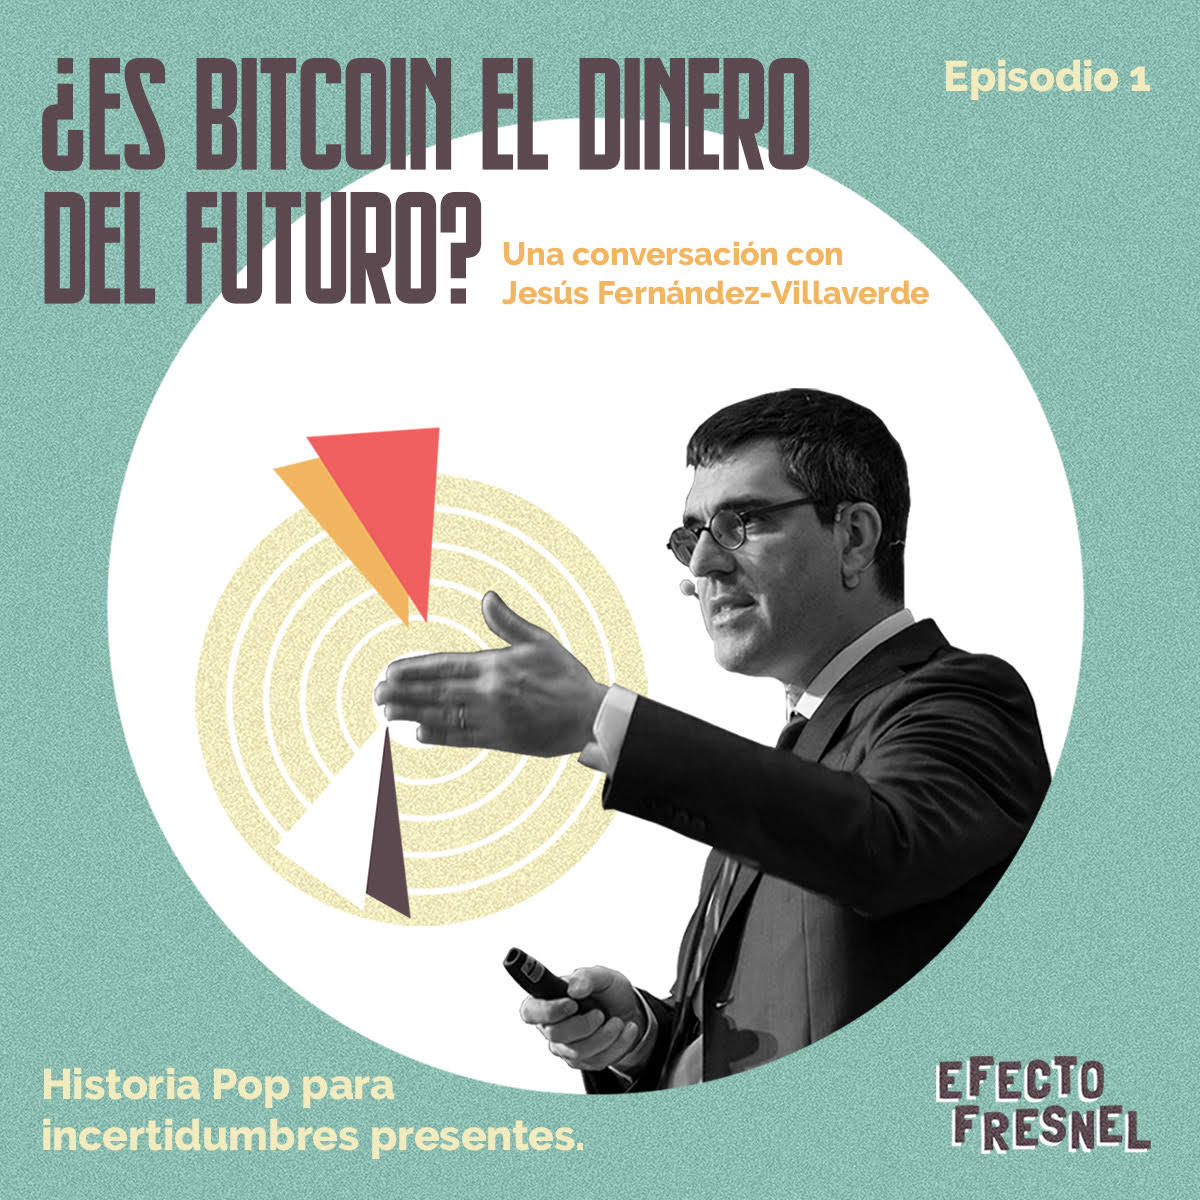 Episodio 1. ¿Es bitcoin el dinero del futuro?